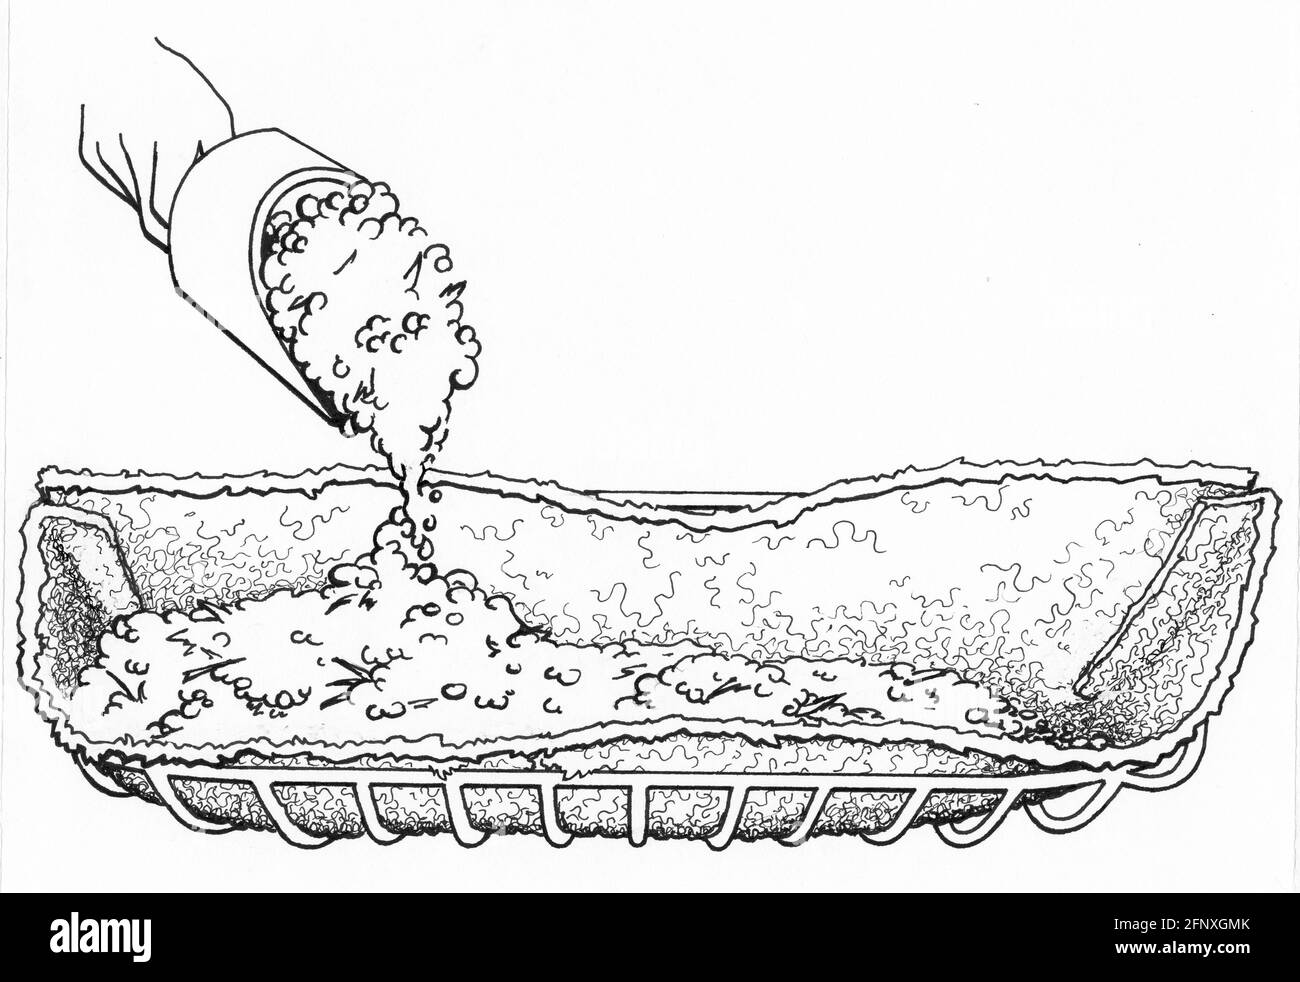 Un disegno di una persona che riempie una piantatrice hayrack con impasto per vasellatura Foto Stock